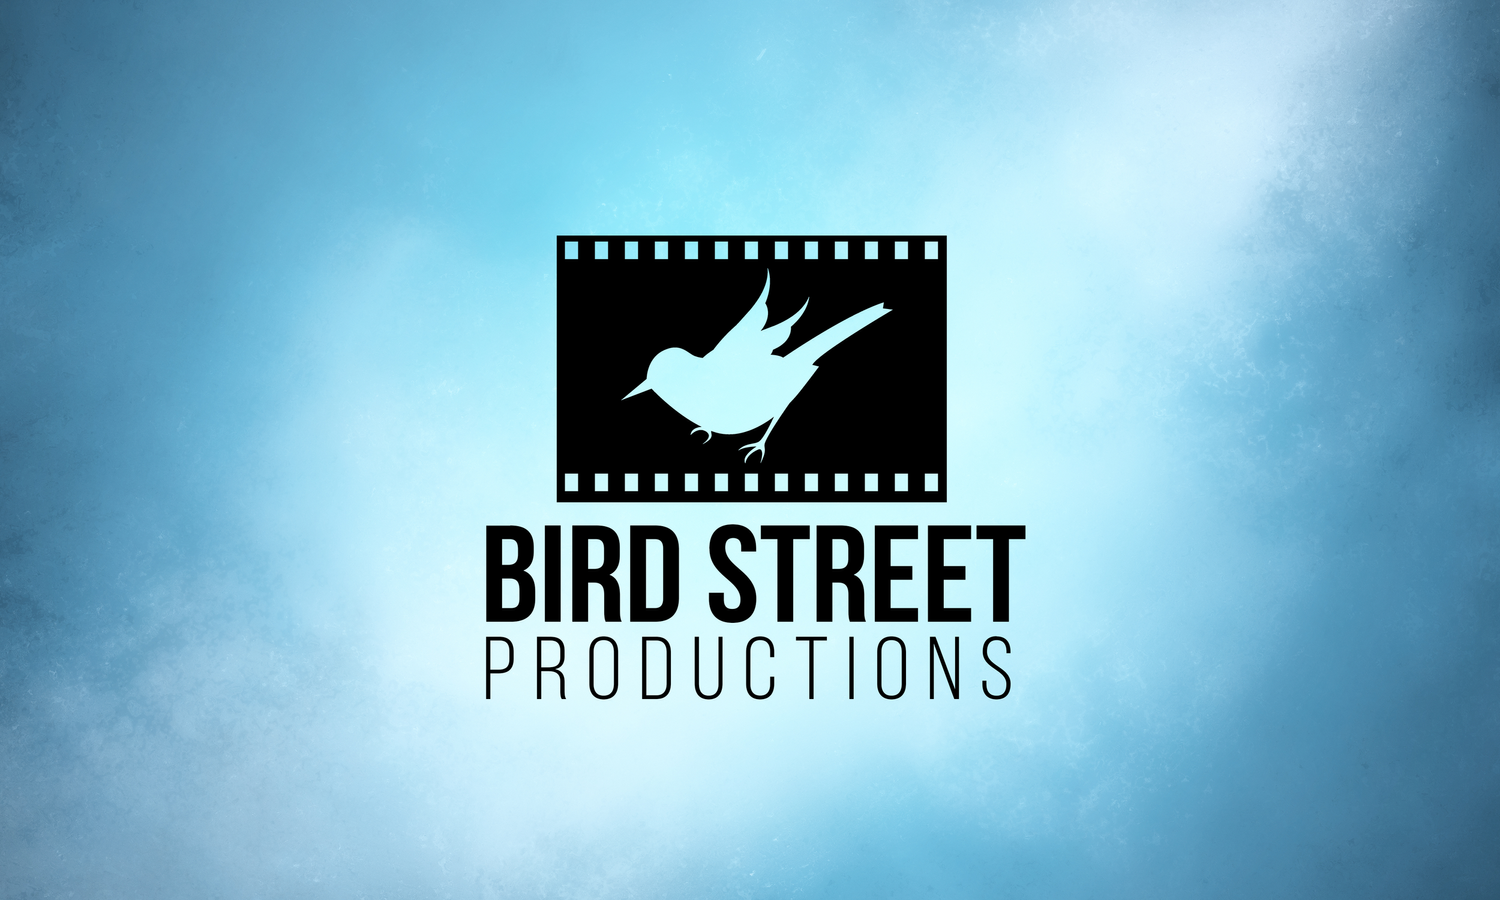 BIRDSTREET PRODUCTIONS